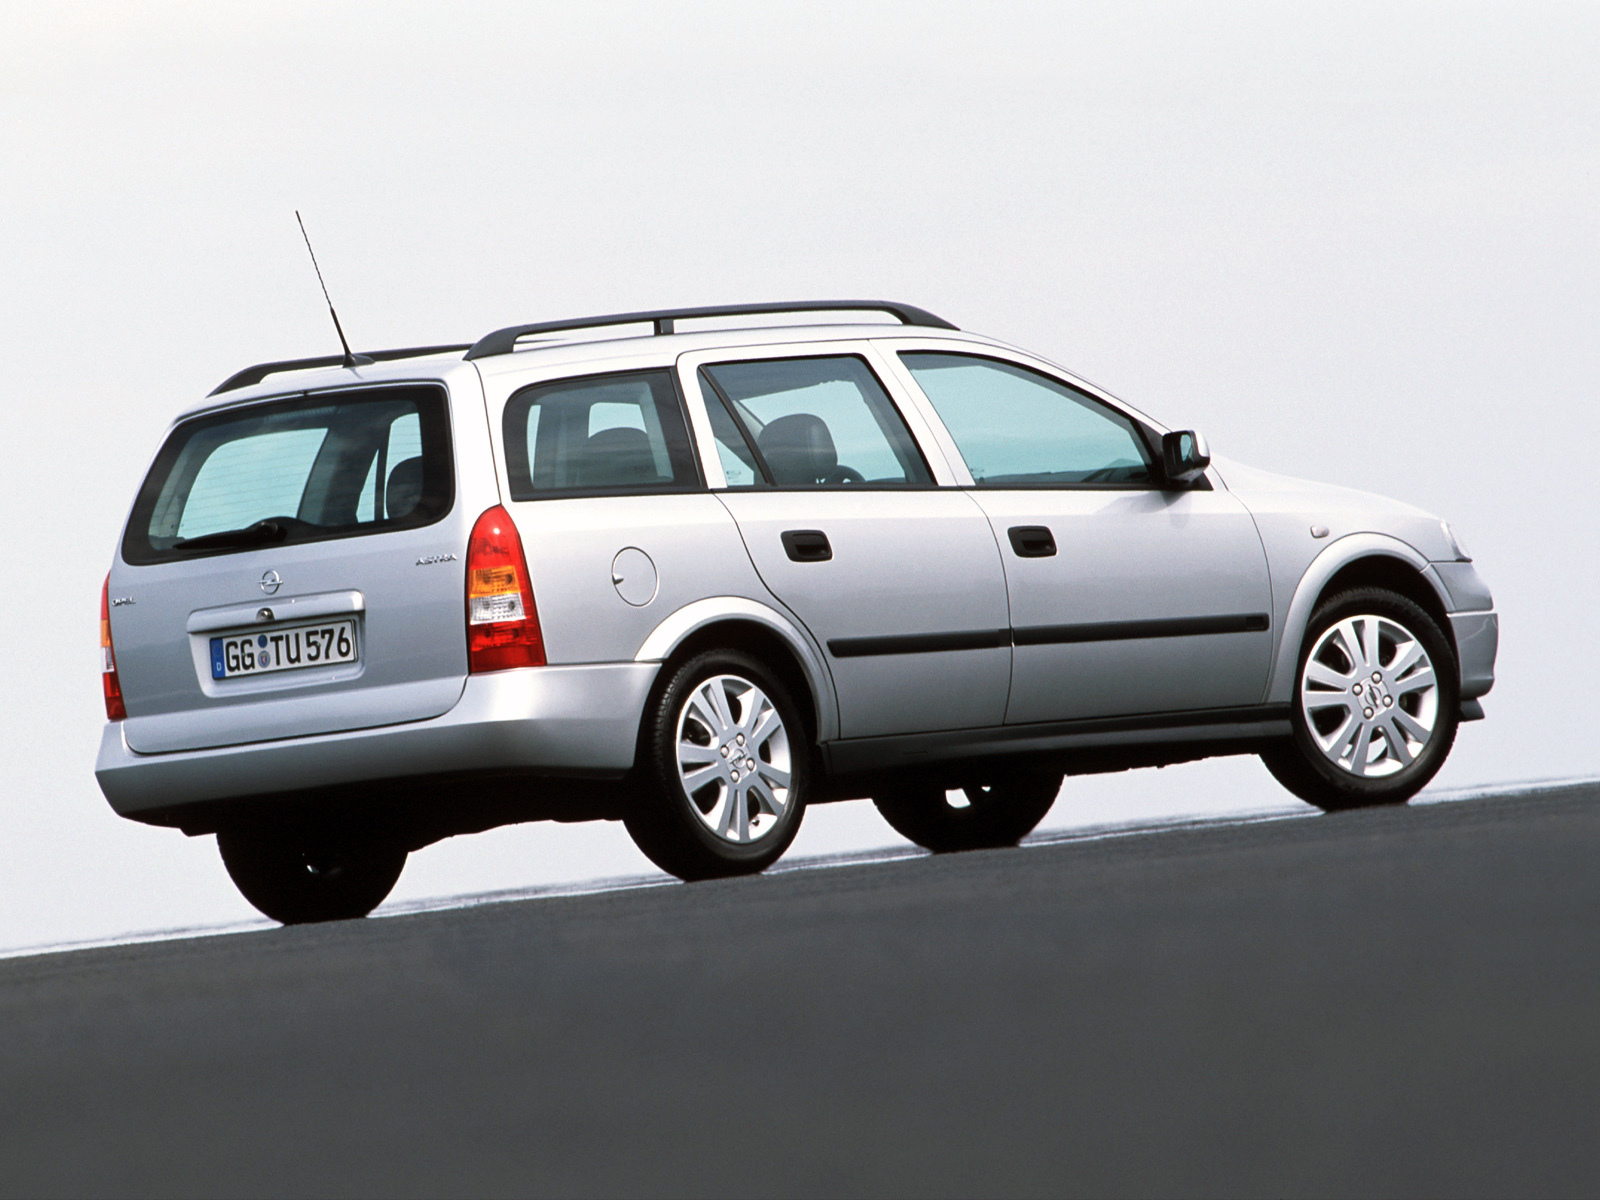 Джи караван. Opel Astra g 1998 универсал. Opel Astra g Caravan 1998. Opel Astra g Caravan 2004.